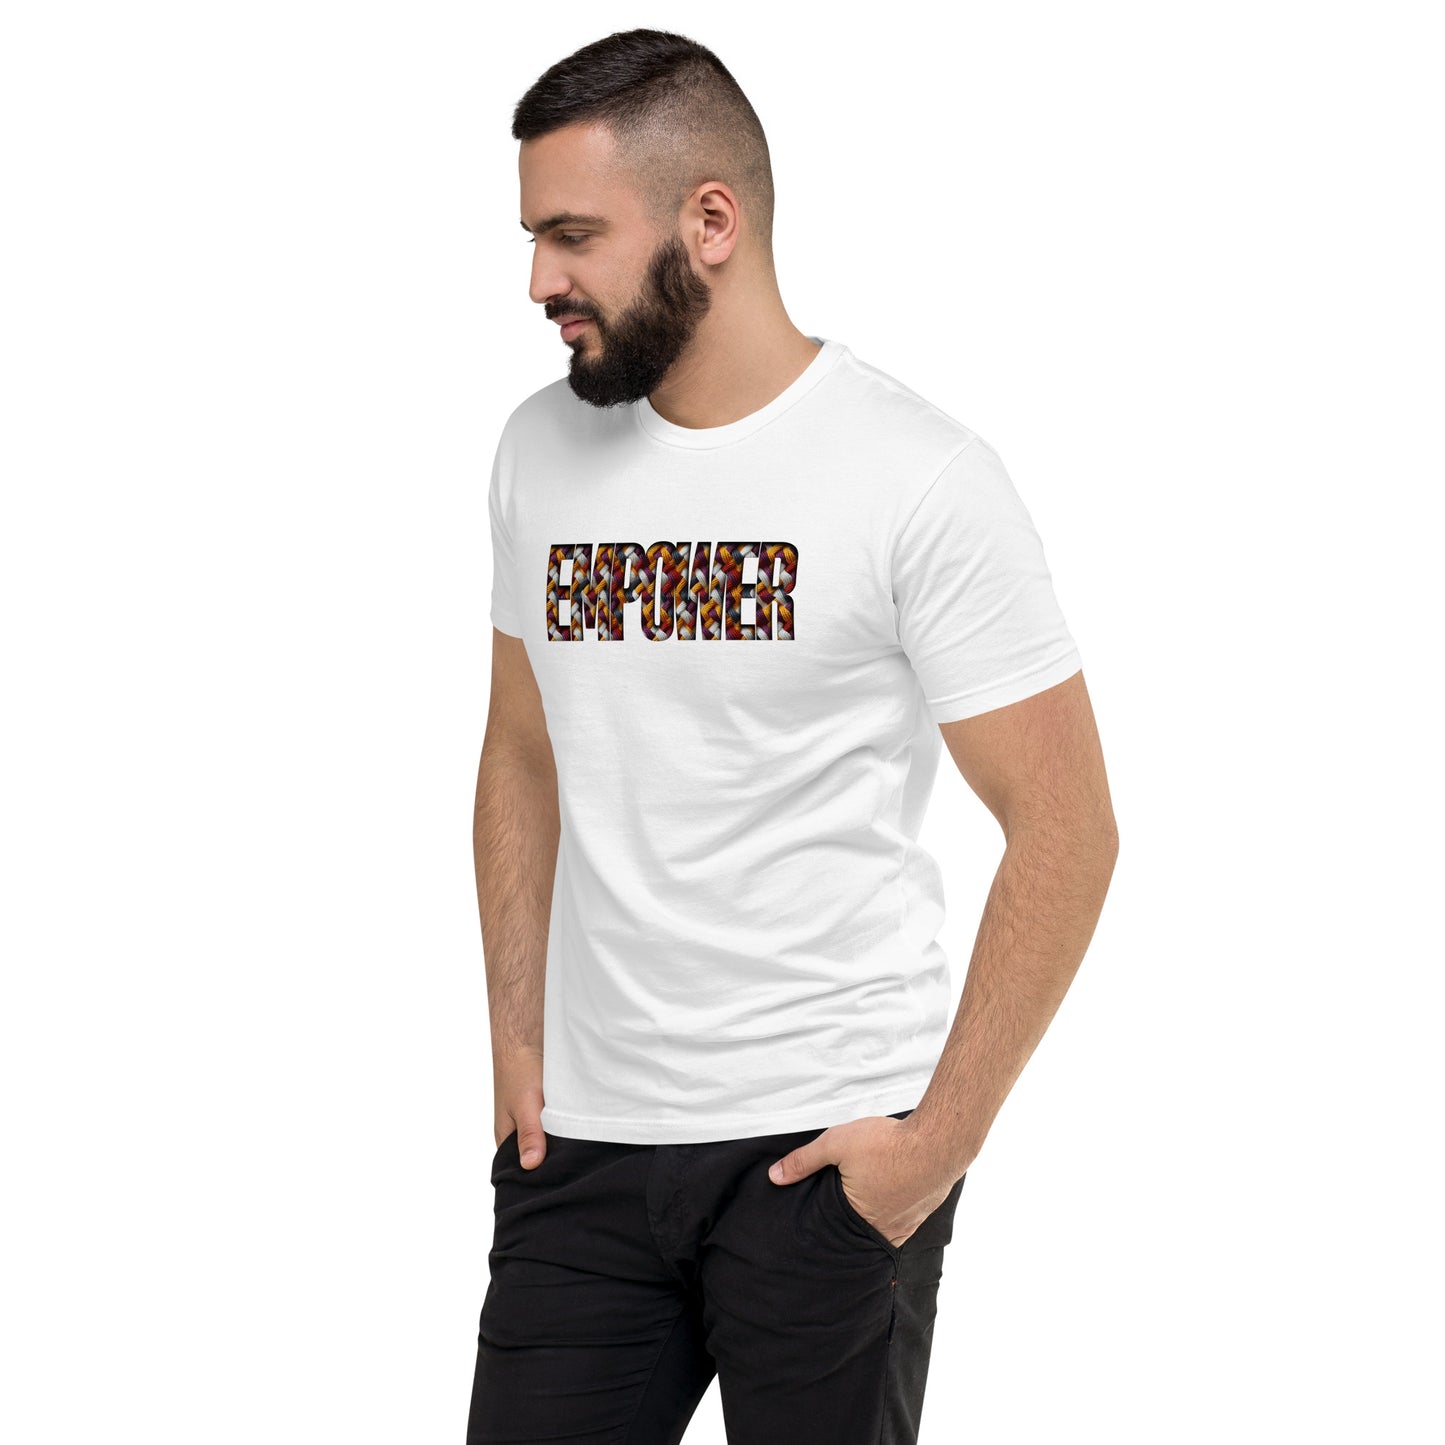 FBB Empower Knit Short Sleeve T-shirt